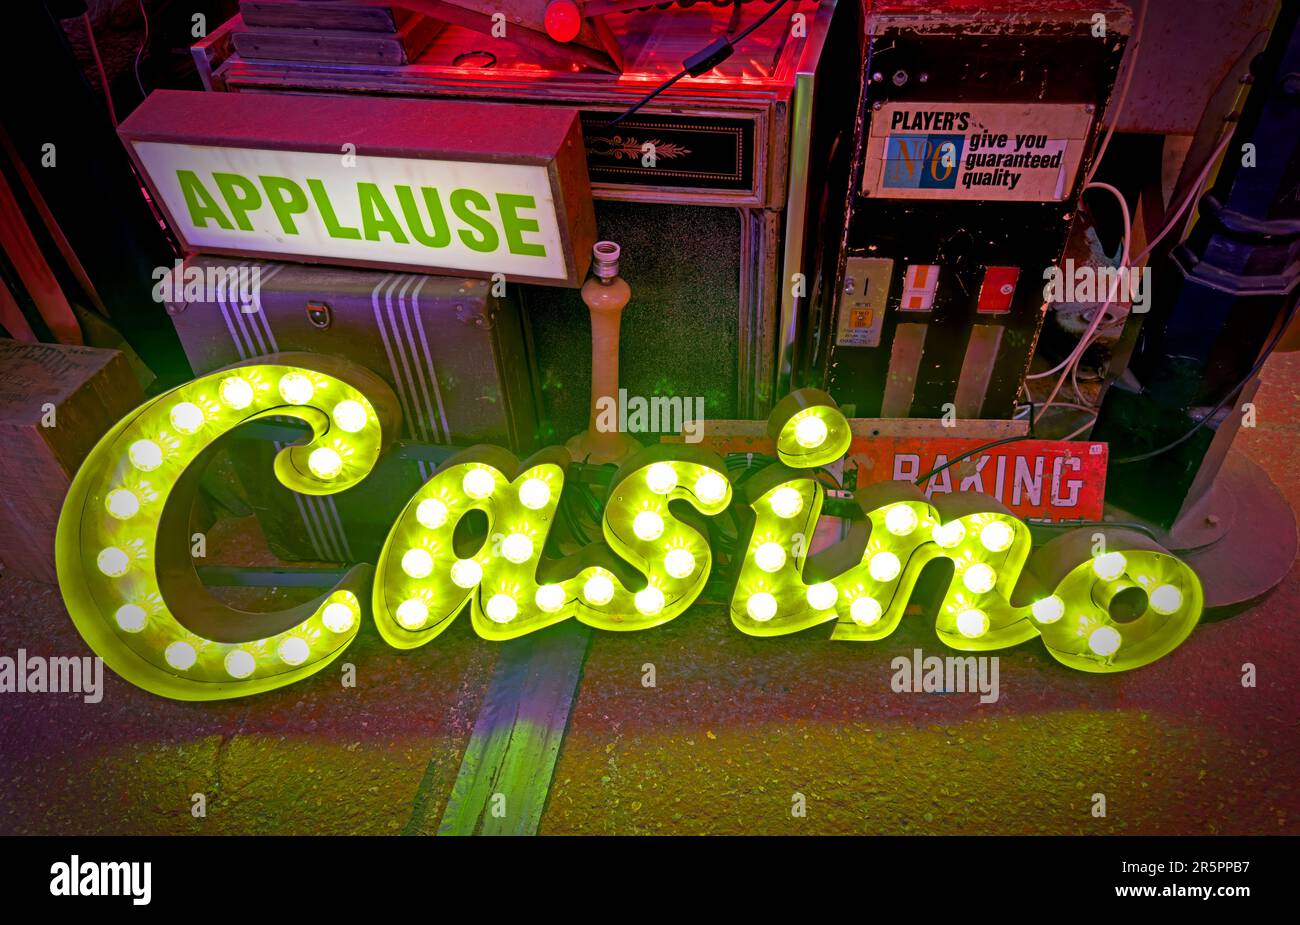 Panneau électrique jaune de casino de style Wigan, avec ampoules allumées et autres équipements électriques Banque D'Images